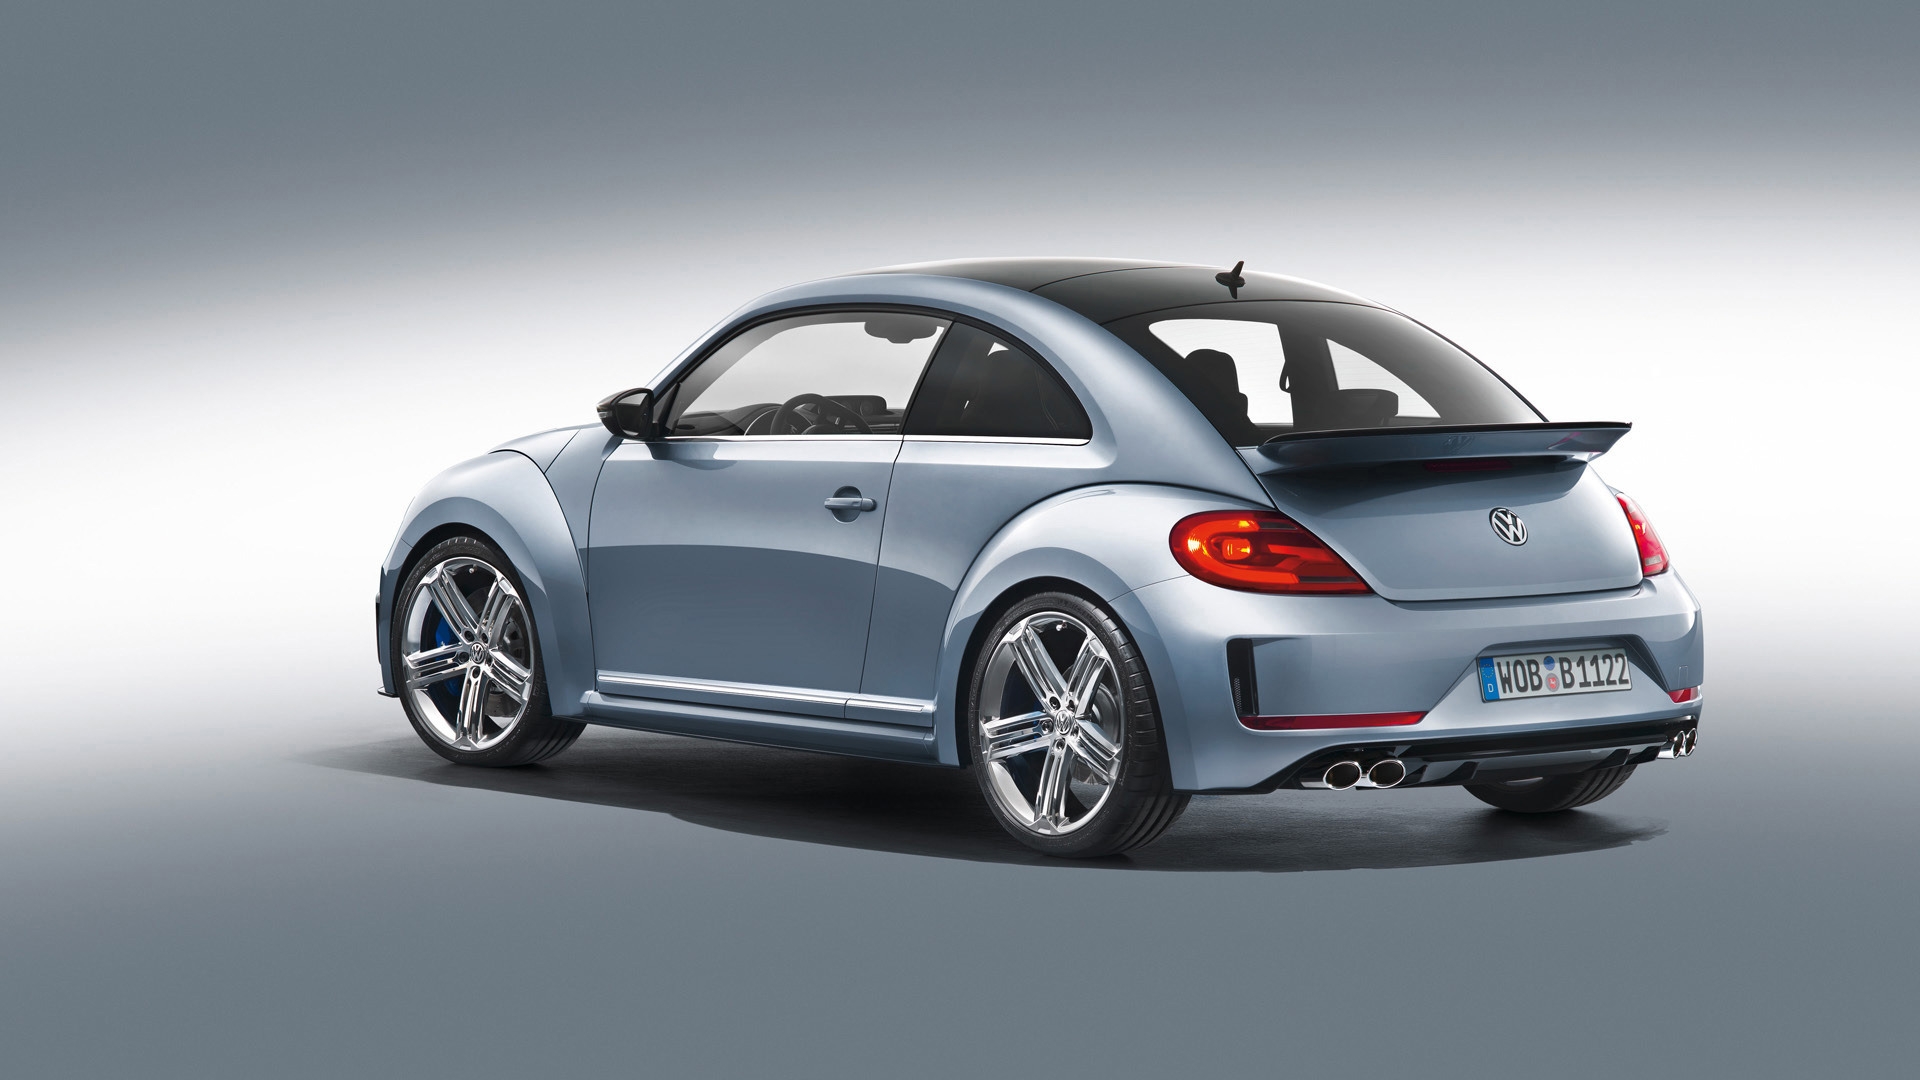 2011 Volkswagen Beetle R Concept Studio for 1920 x 1080 HDTV 1080p resolution